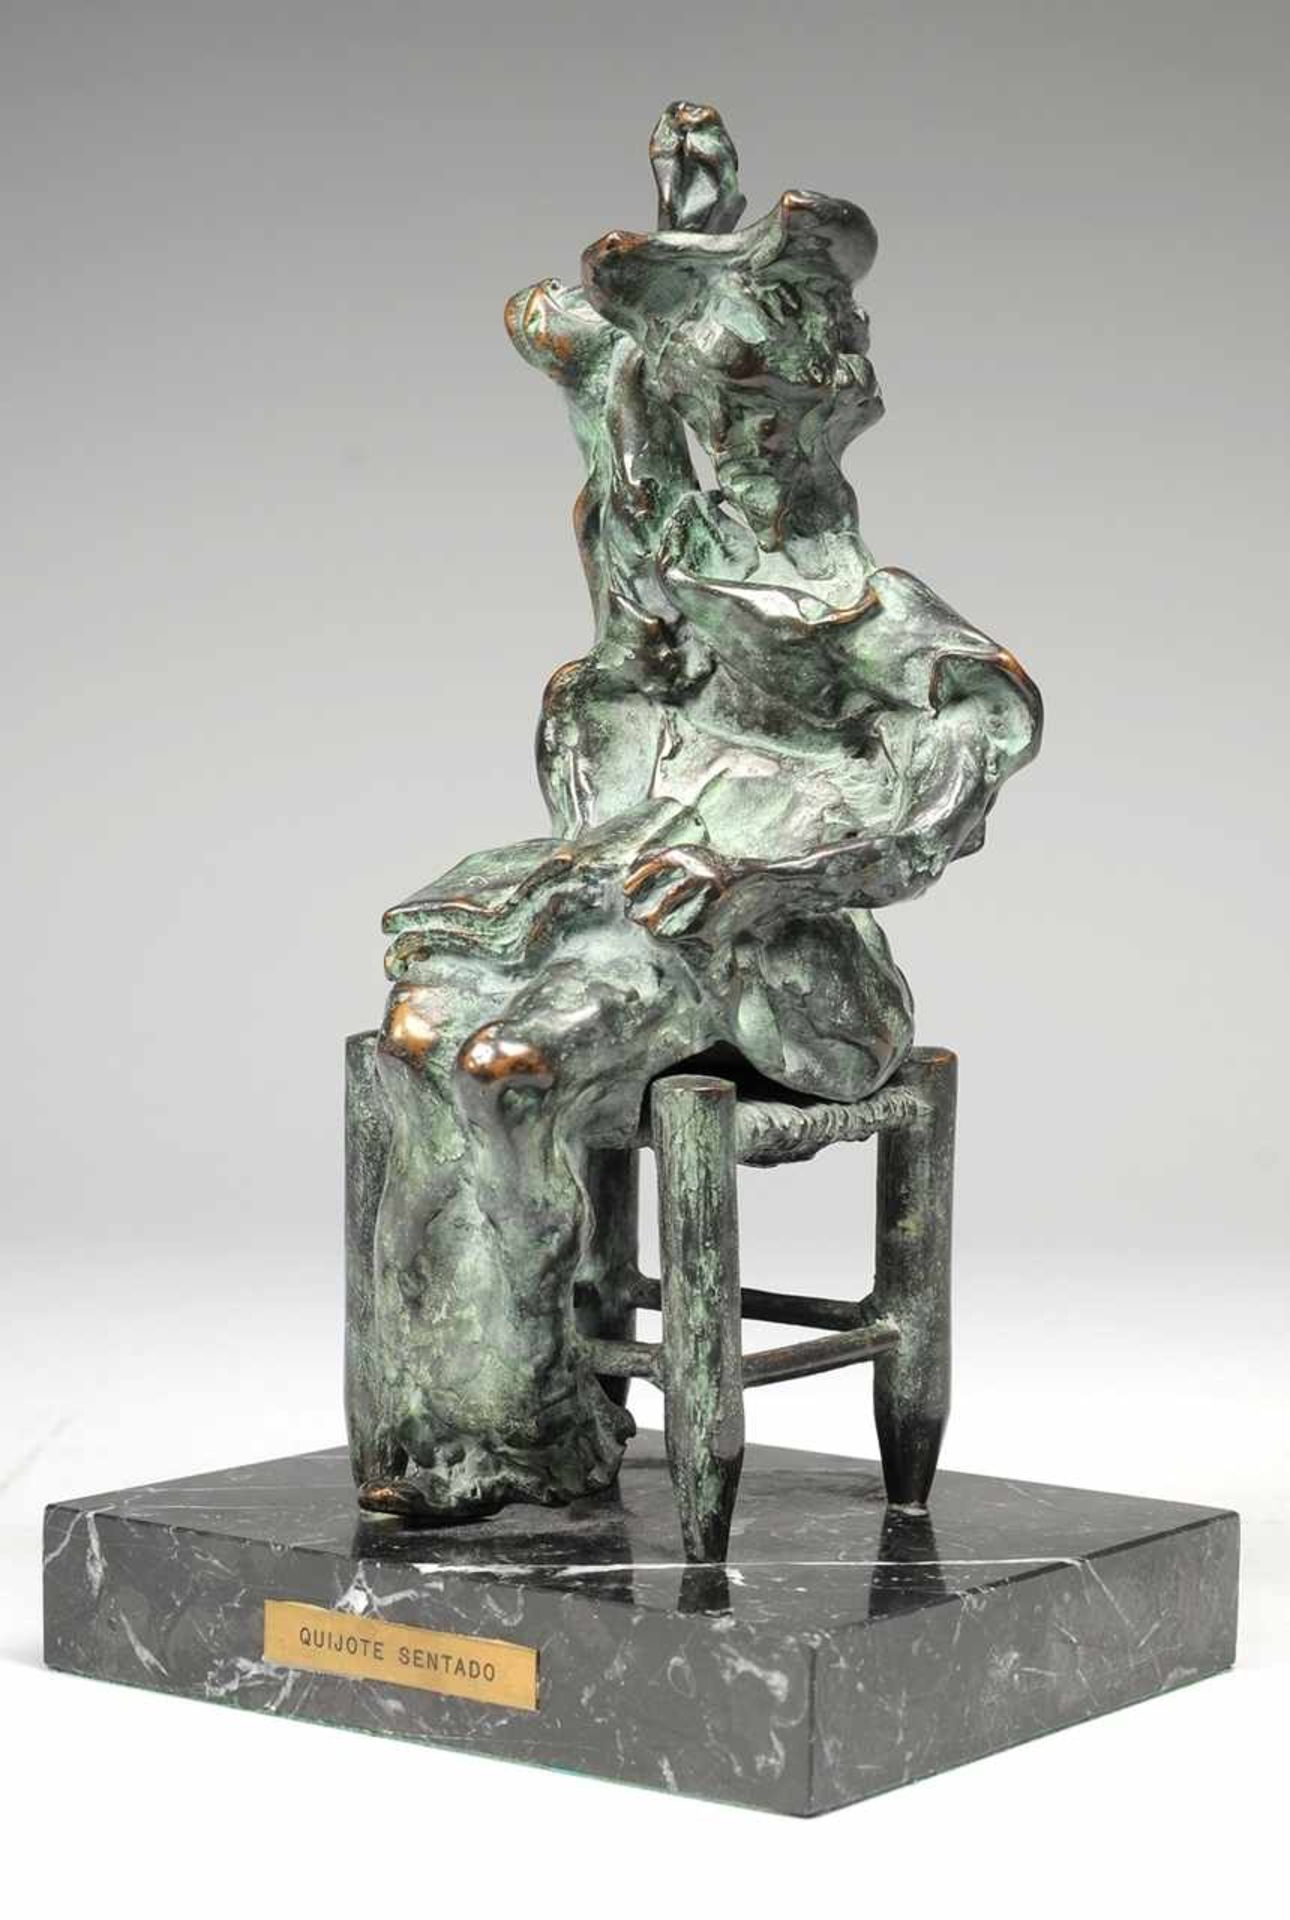 Dalí, Salvador (Figueres 1904 - 1989) Bronze, patiniert. "Quijote sentado", Don Quijote auf einem - Bild 5 aus 7